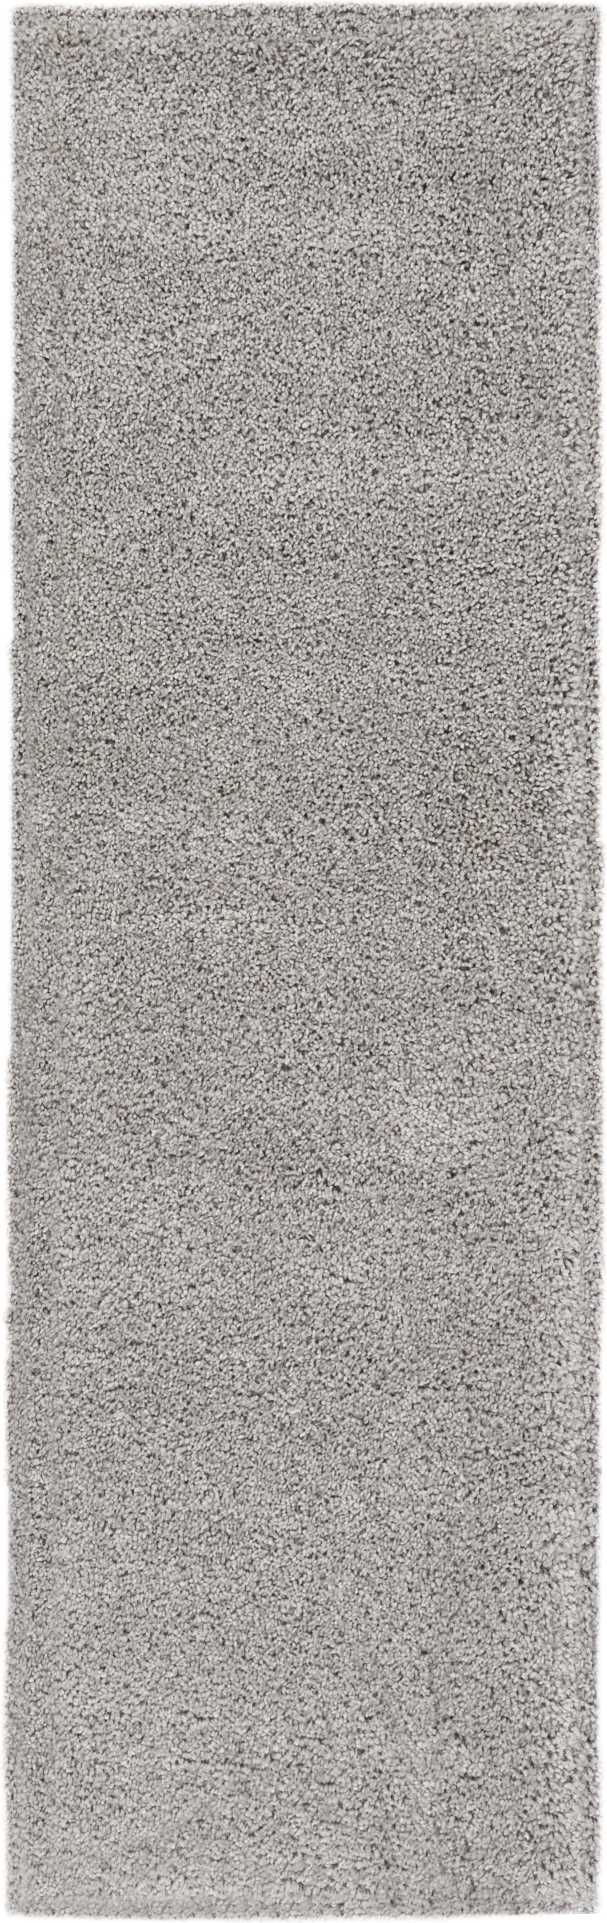 malibu shag silver grey rug by nourison 99446397409 redo 3